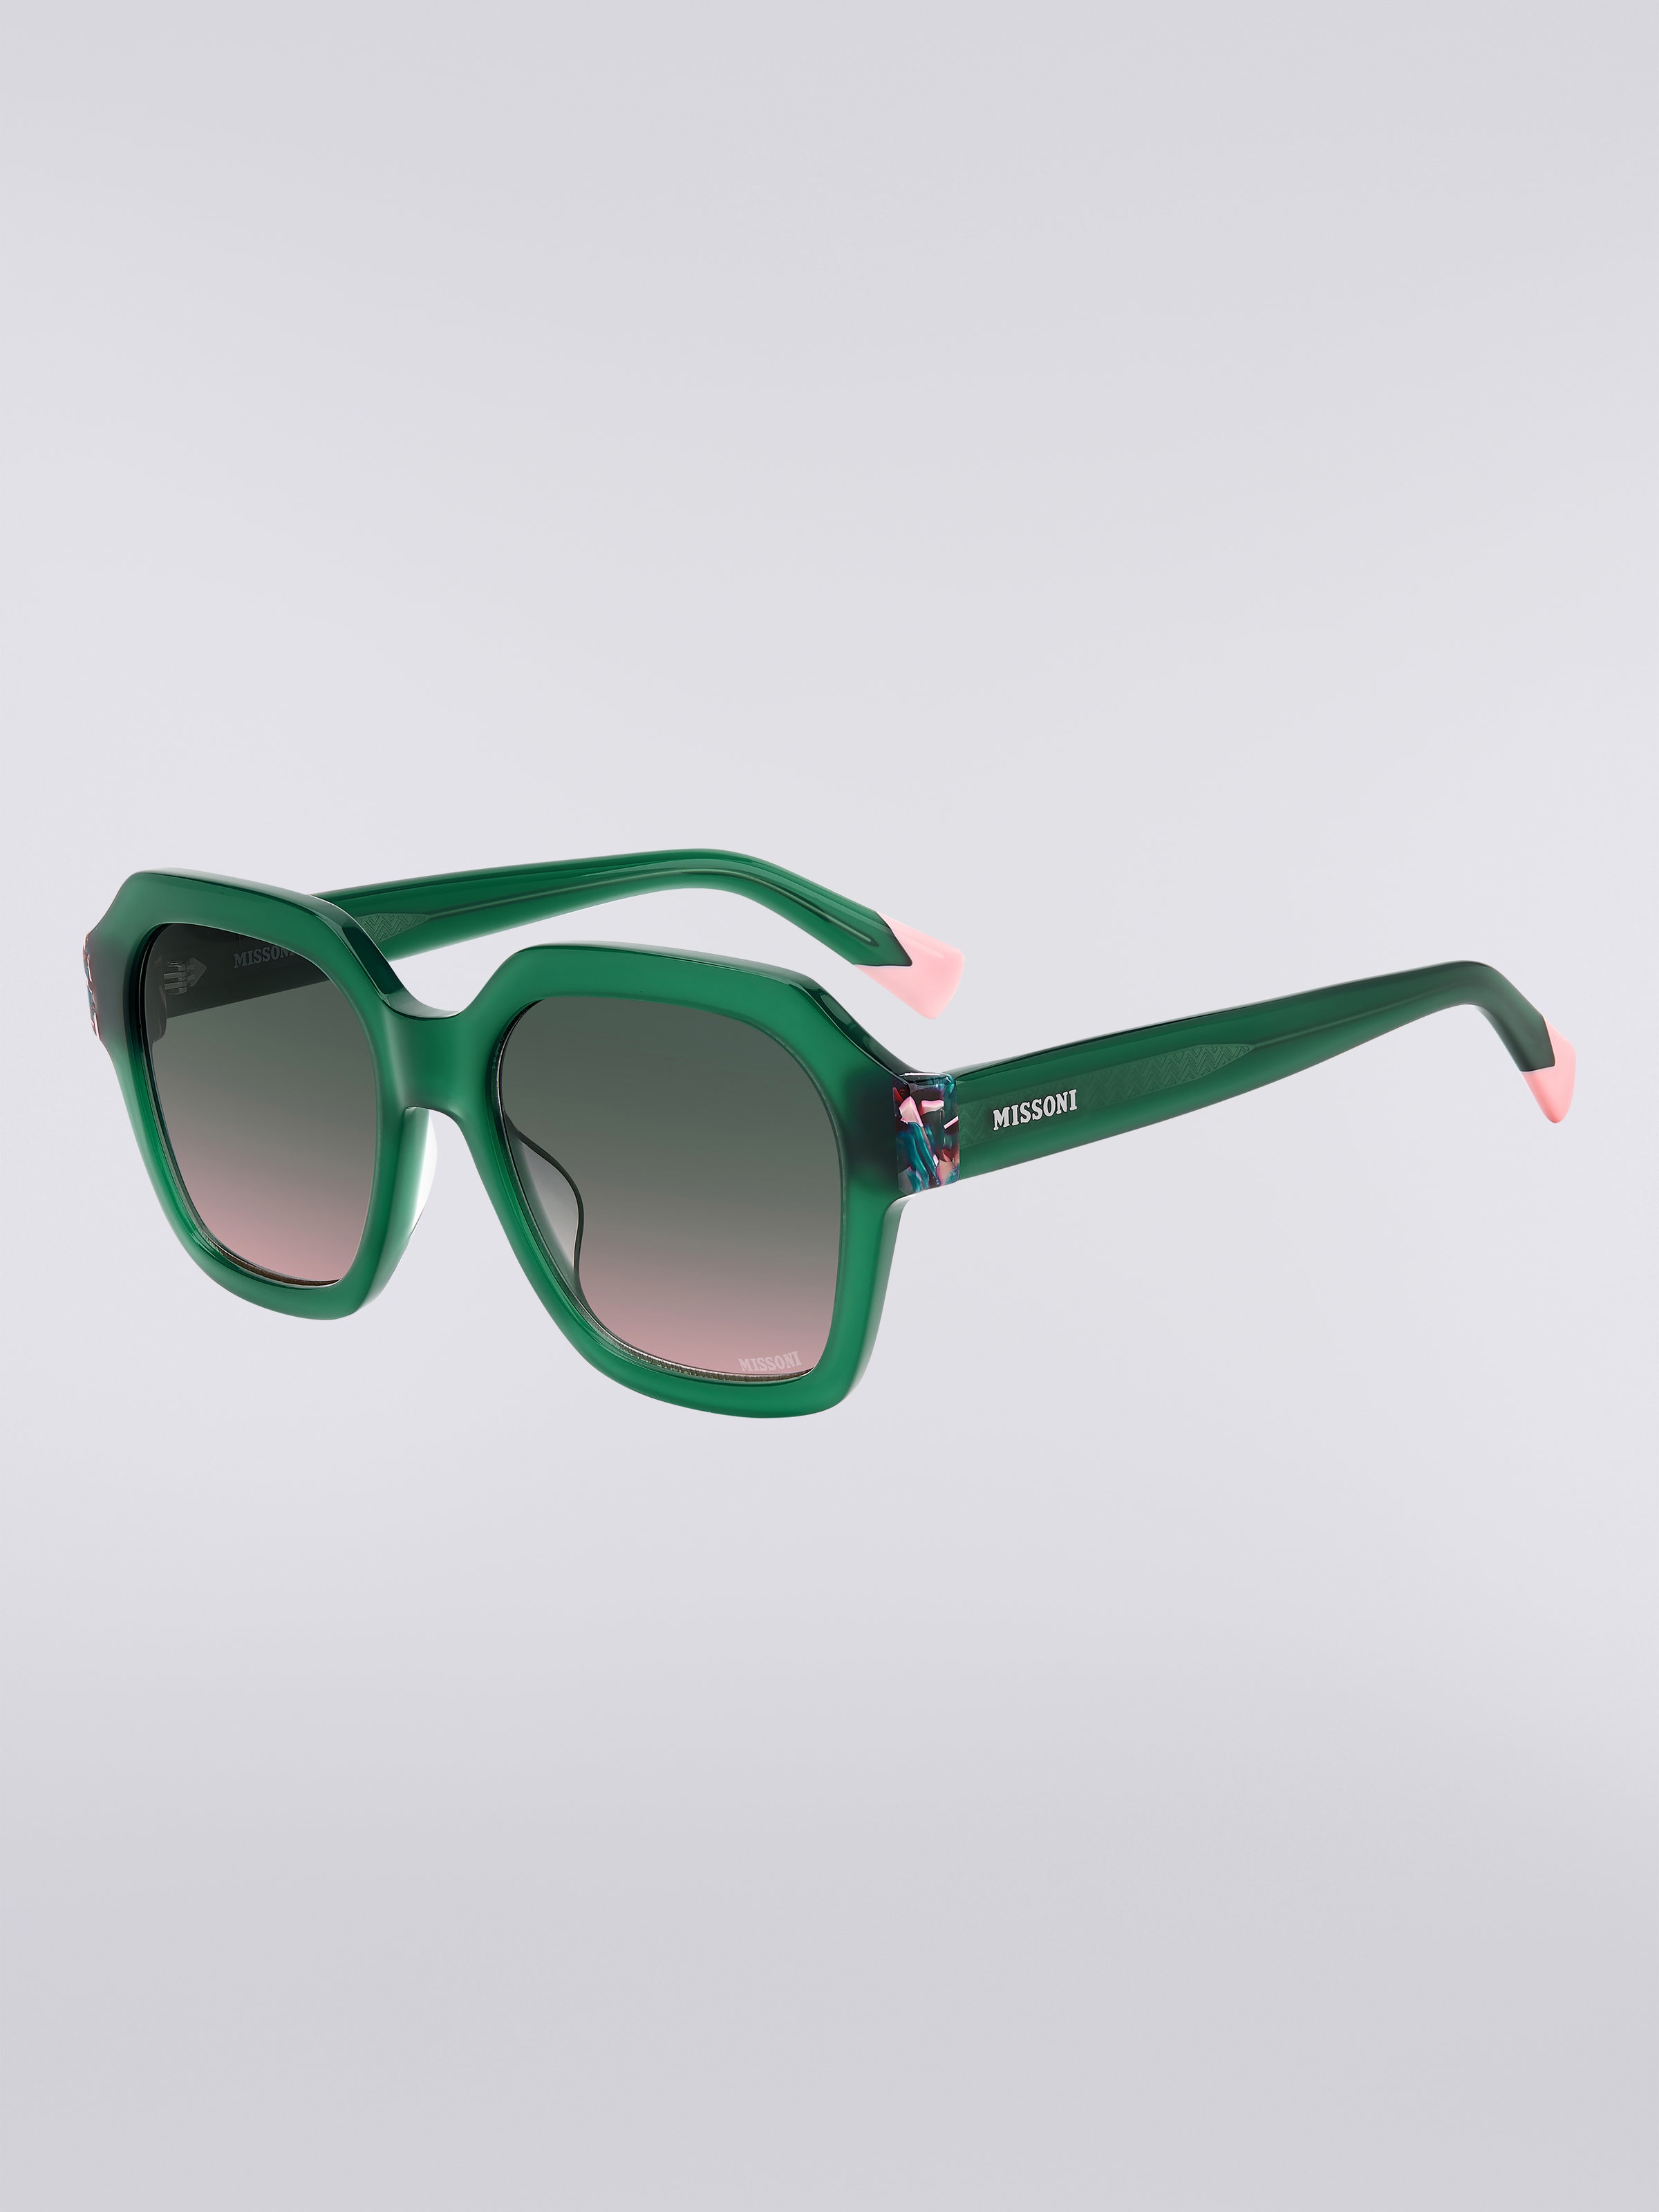 Missoni Seasonal Sonnenbrille aus Acetat, Grün & Rosa - 1